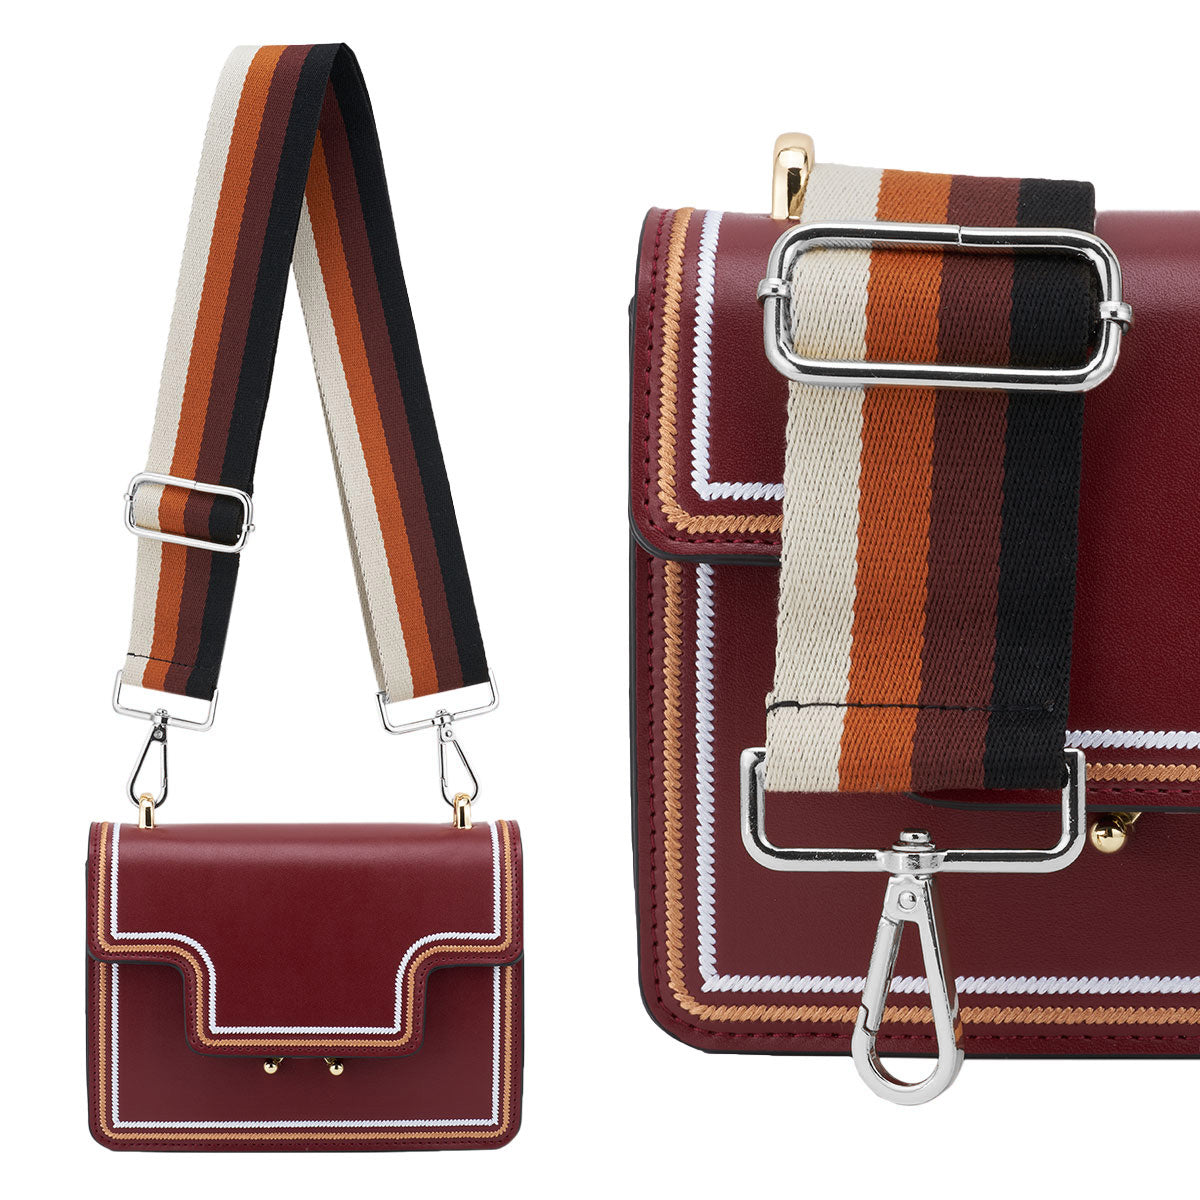 Adjustable Crossbody Purse Straps - Wide Shoulder Belt for Handbag, Canvas  Bag, Guitar - Replacement Strap